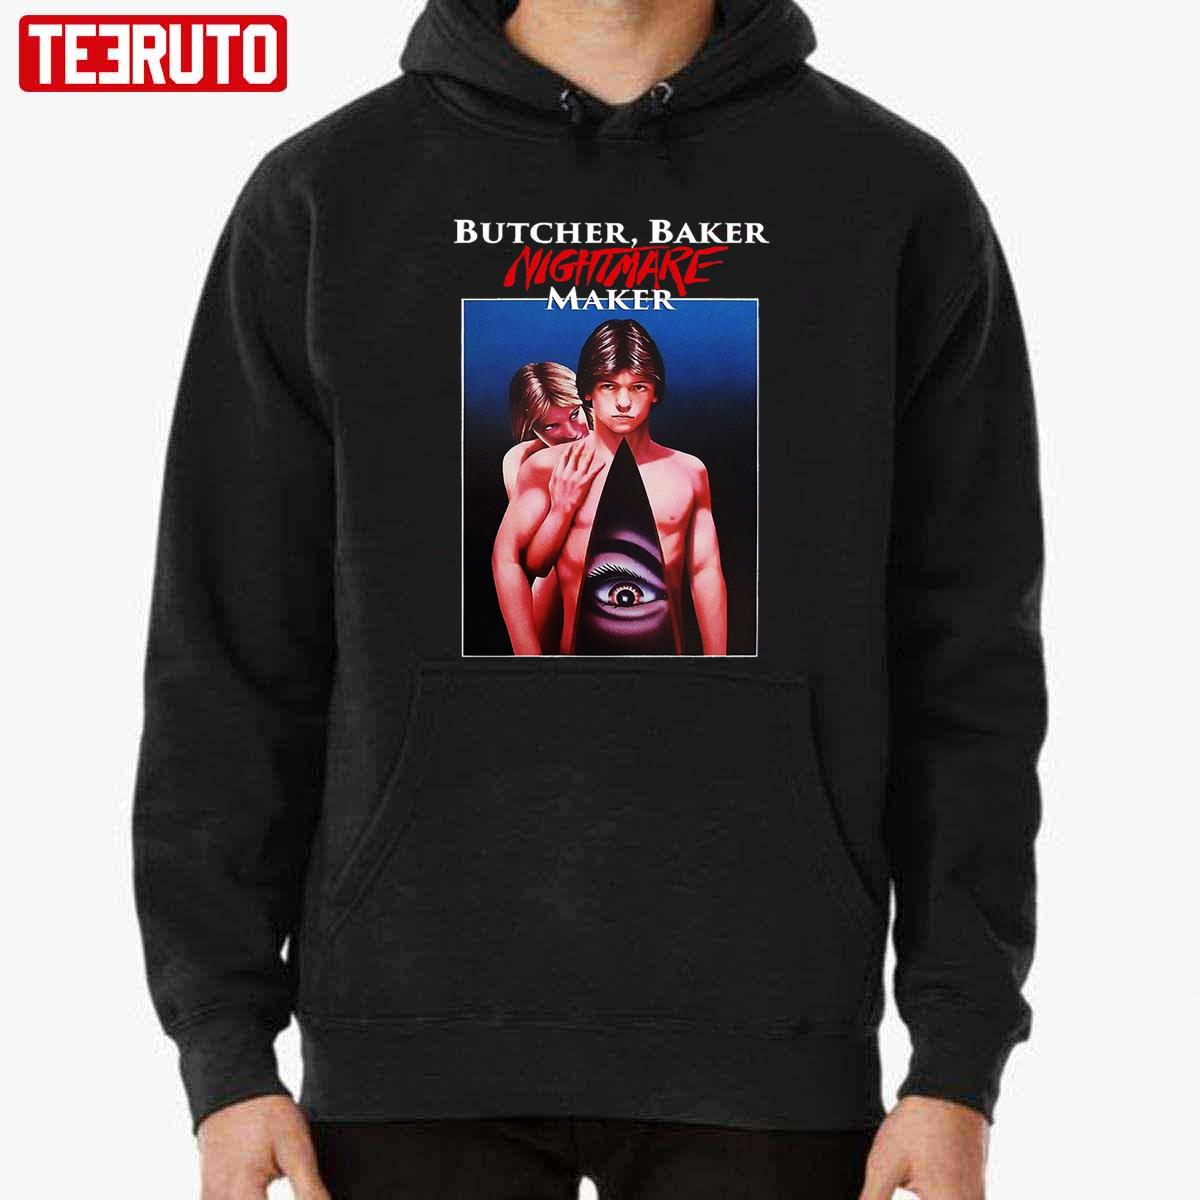 Butcher Baker Nightmare Maker Unisex Sweatshirt